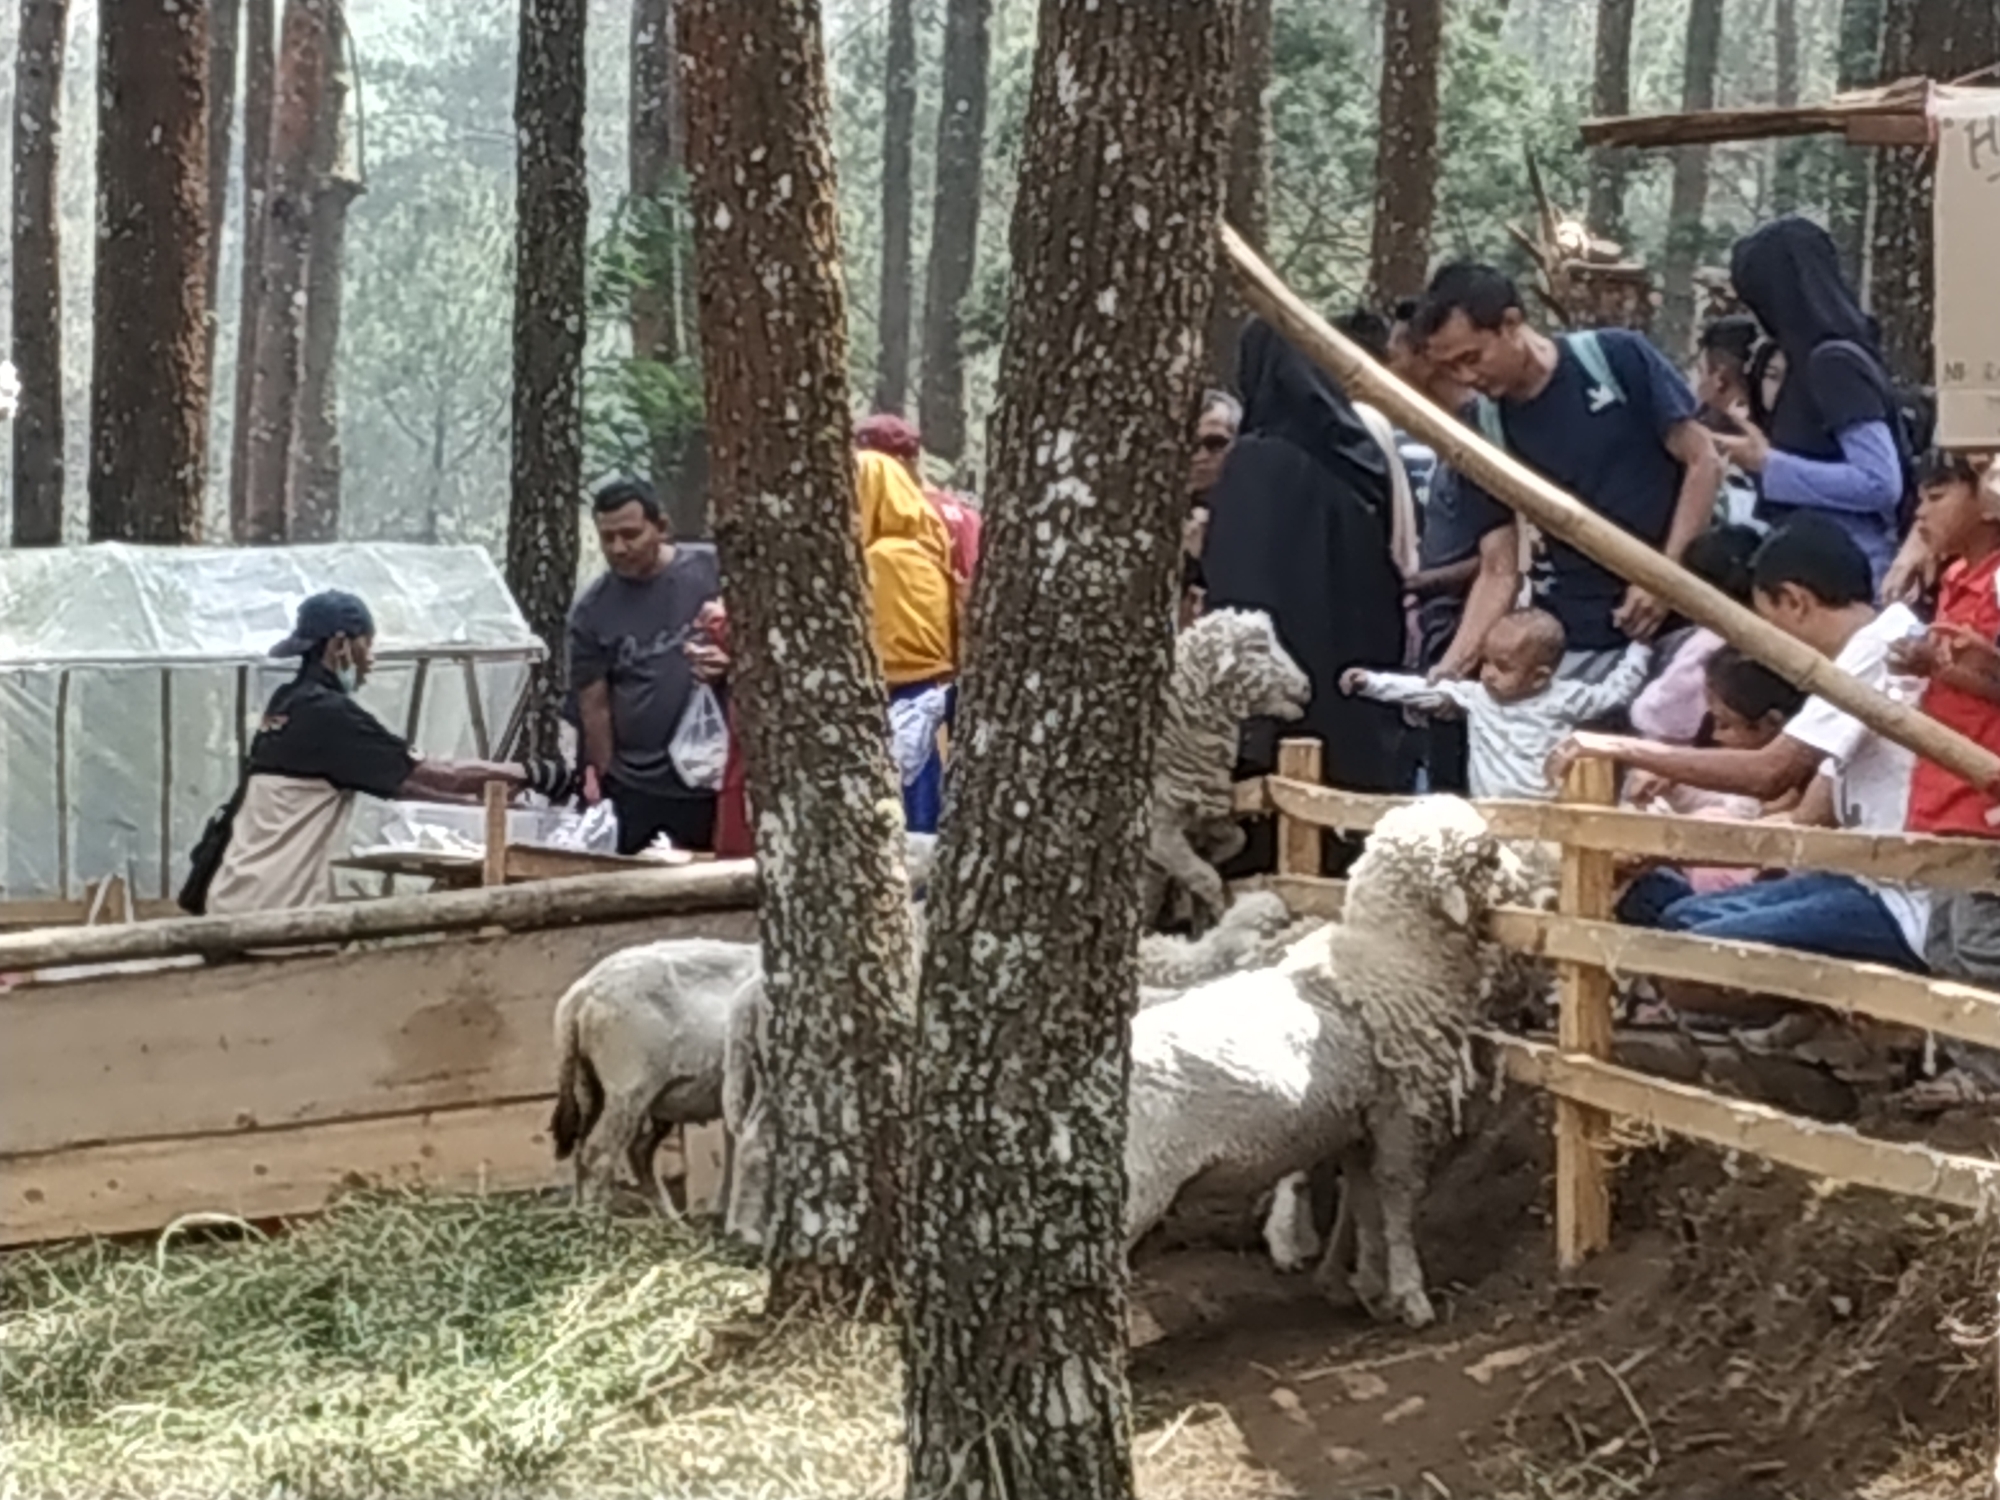 Wisatawan memberi makan kambing di wisata The Lawu Park.